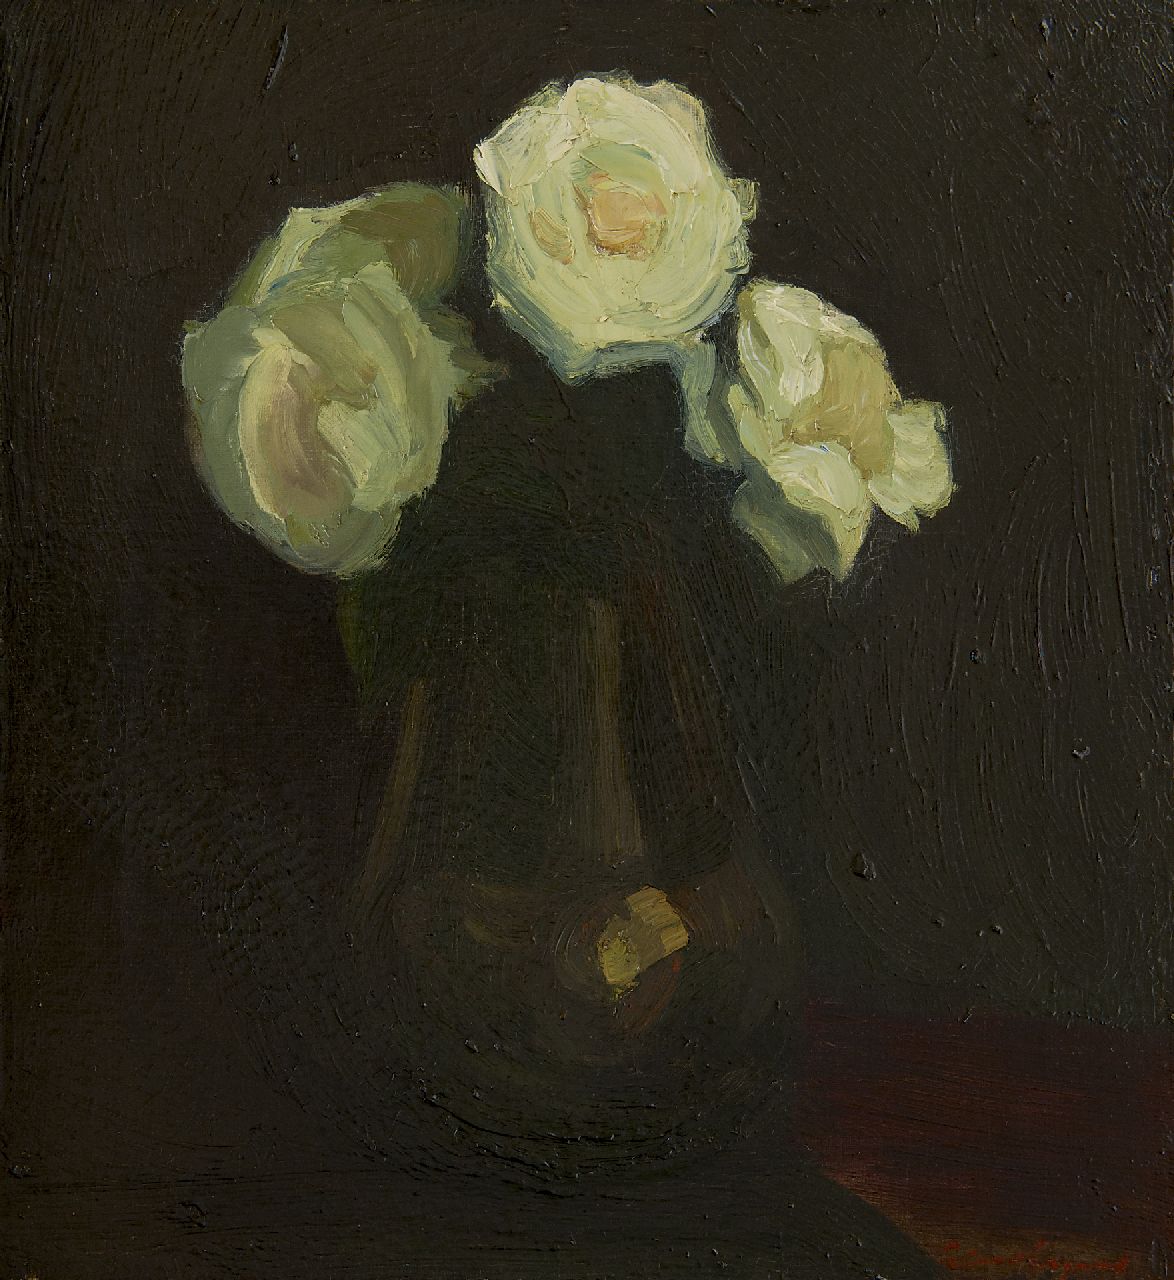 Wijngaerdt P.T. van | Petrus Theodorus 'Piet' van Wijngaerdt, White roses, oil on canvas 44.7 x 40.0 cm, signed l.r. and painted ca. 1918-1920